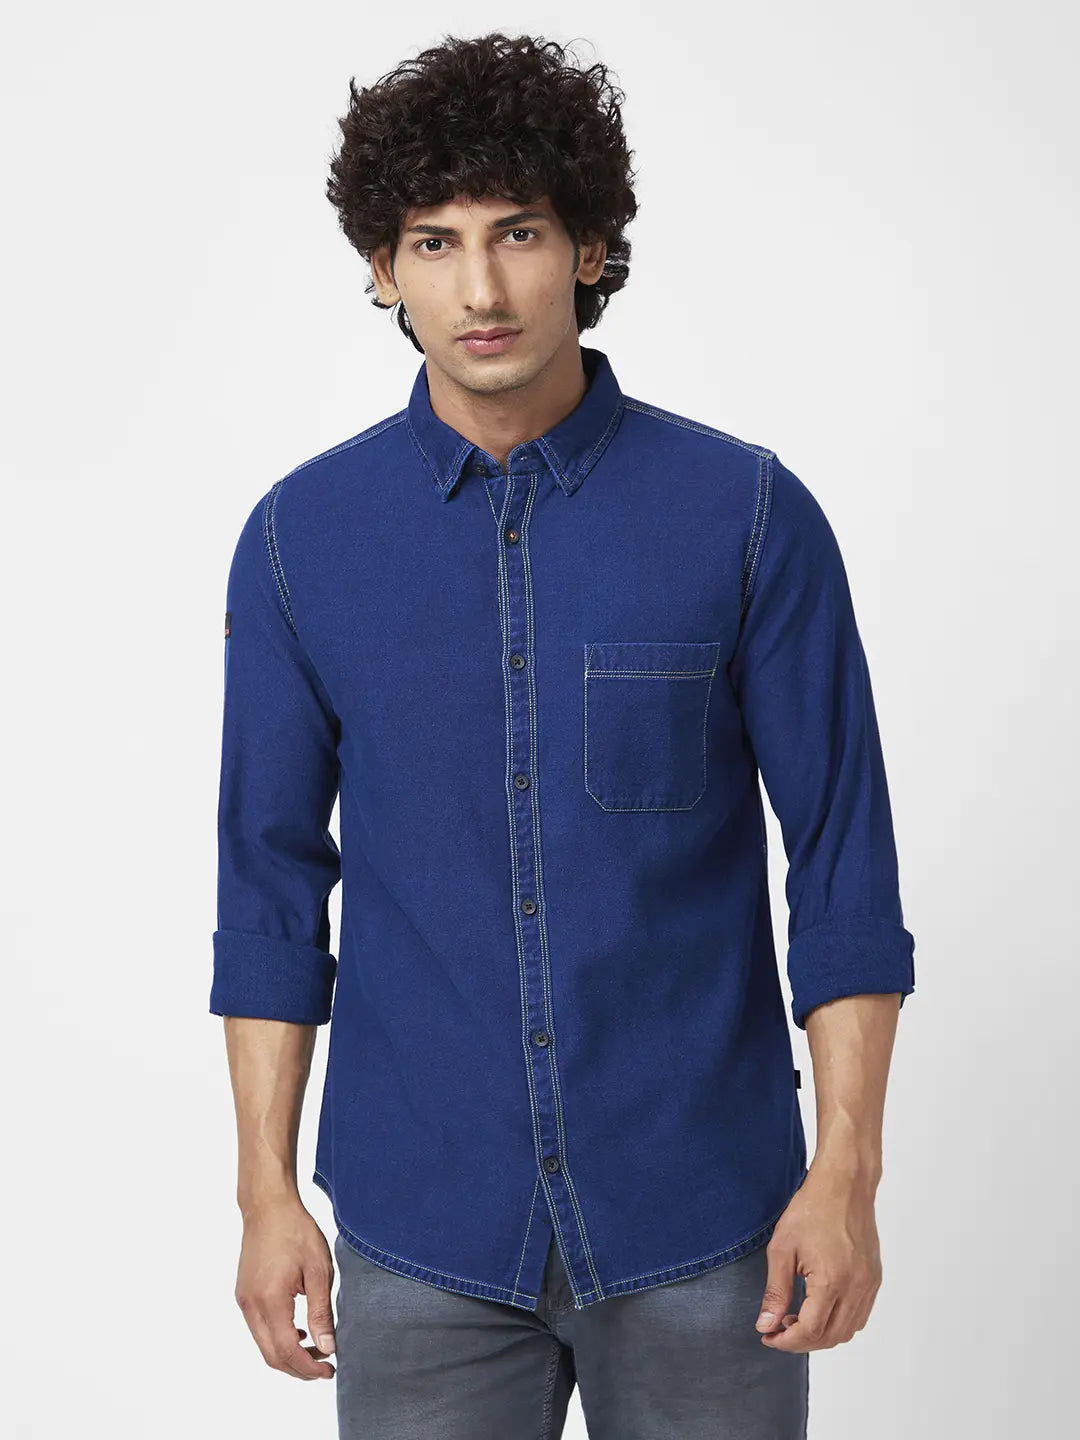 Buy Men Light Blue Cotton Full Sleeve Denim Shirt - Spykar